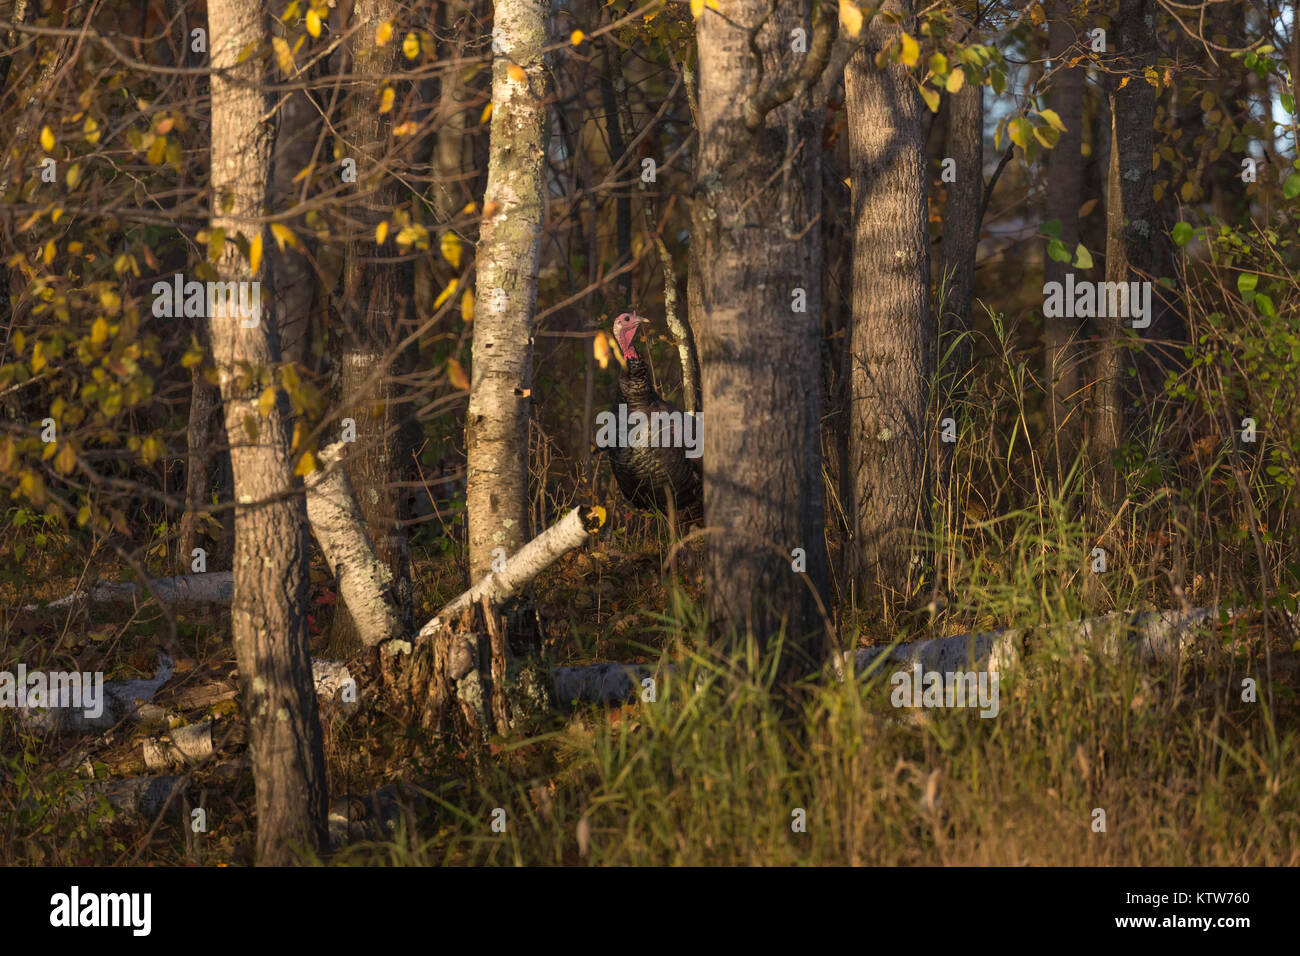 Este pavo salvaje escondido en los bosques de otoño. Foto de stock